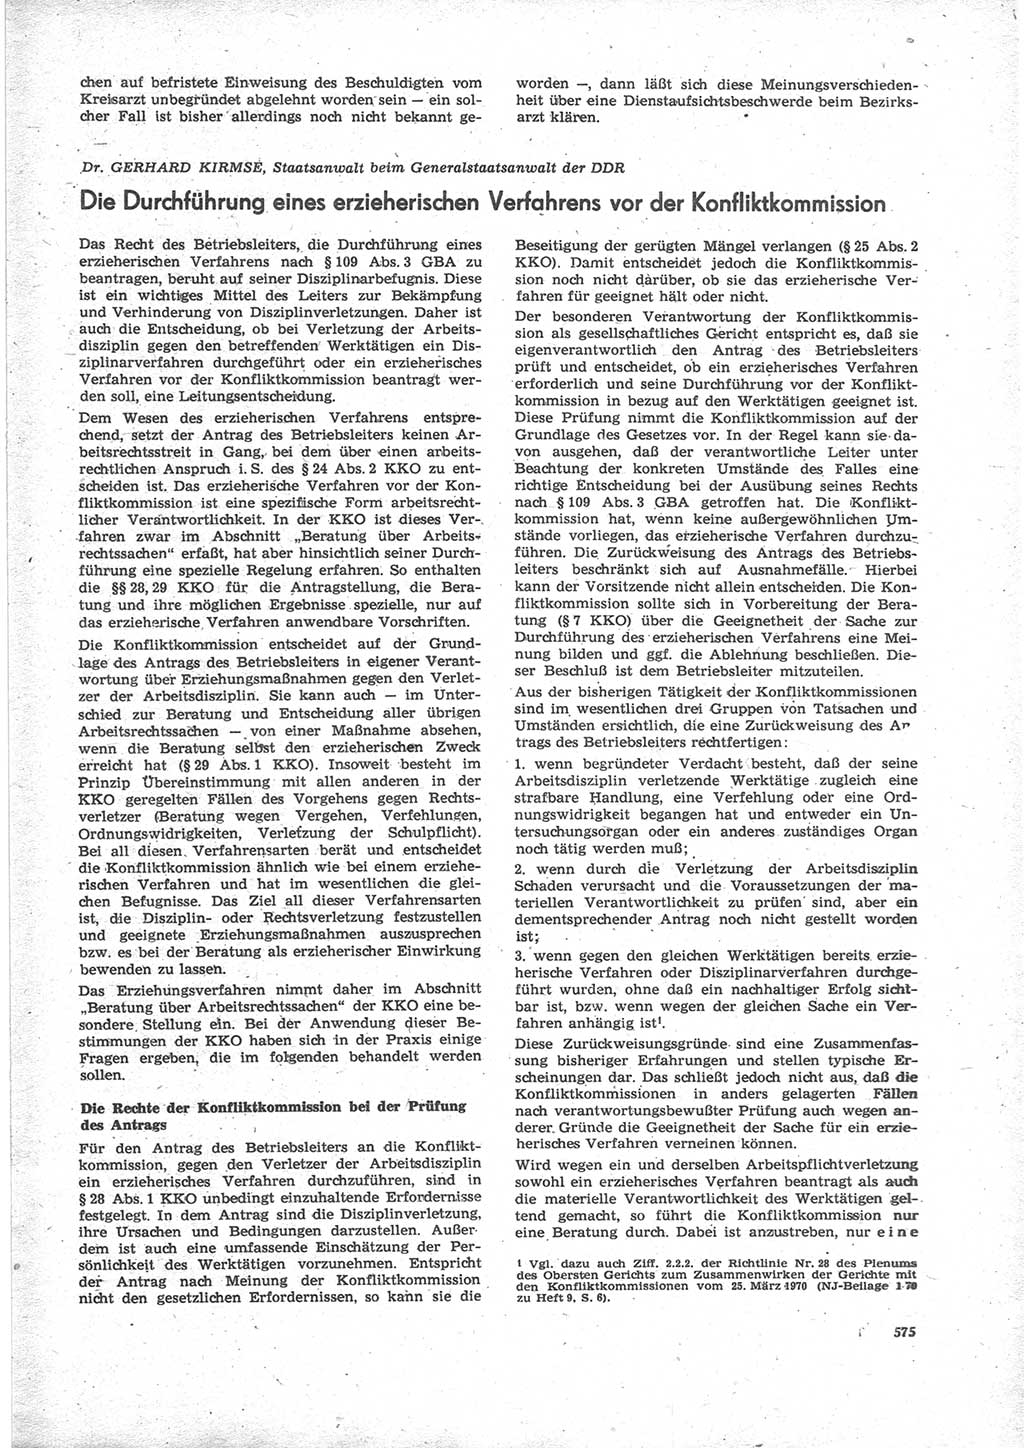 Neue Justiz (NJ), Zeitschrift für Recht und Rechtswissenschaft [Deutsche Demokratische Republik (DDR)], 24. Jahrgang 1970, Seite 575 (NJ DDR 1970, S. 575)